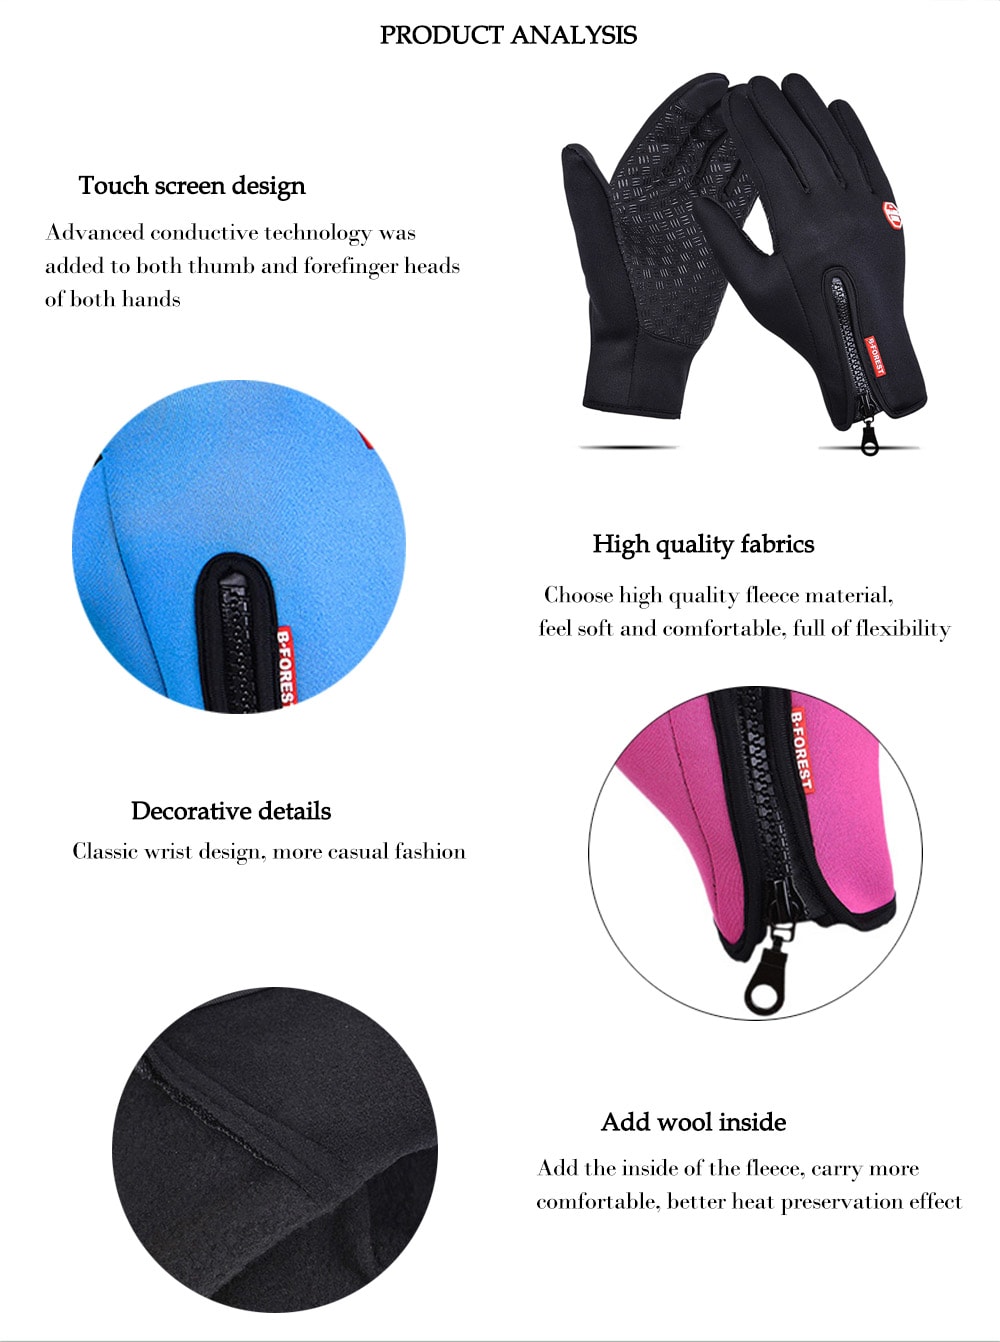 Outdoor Waterproof Fleece Windproof Gloves- Pink M